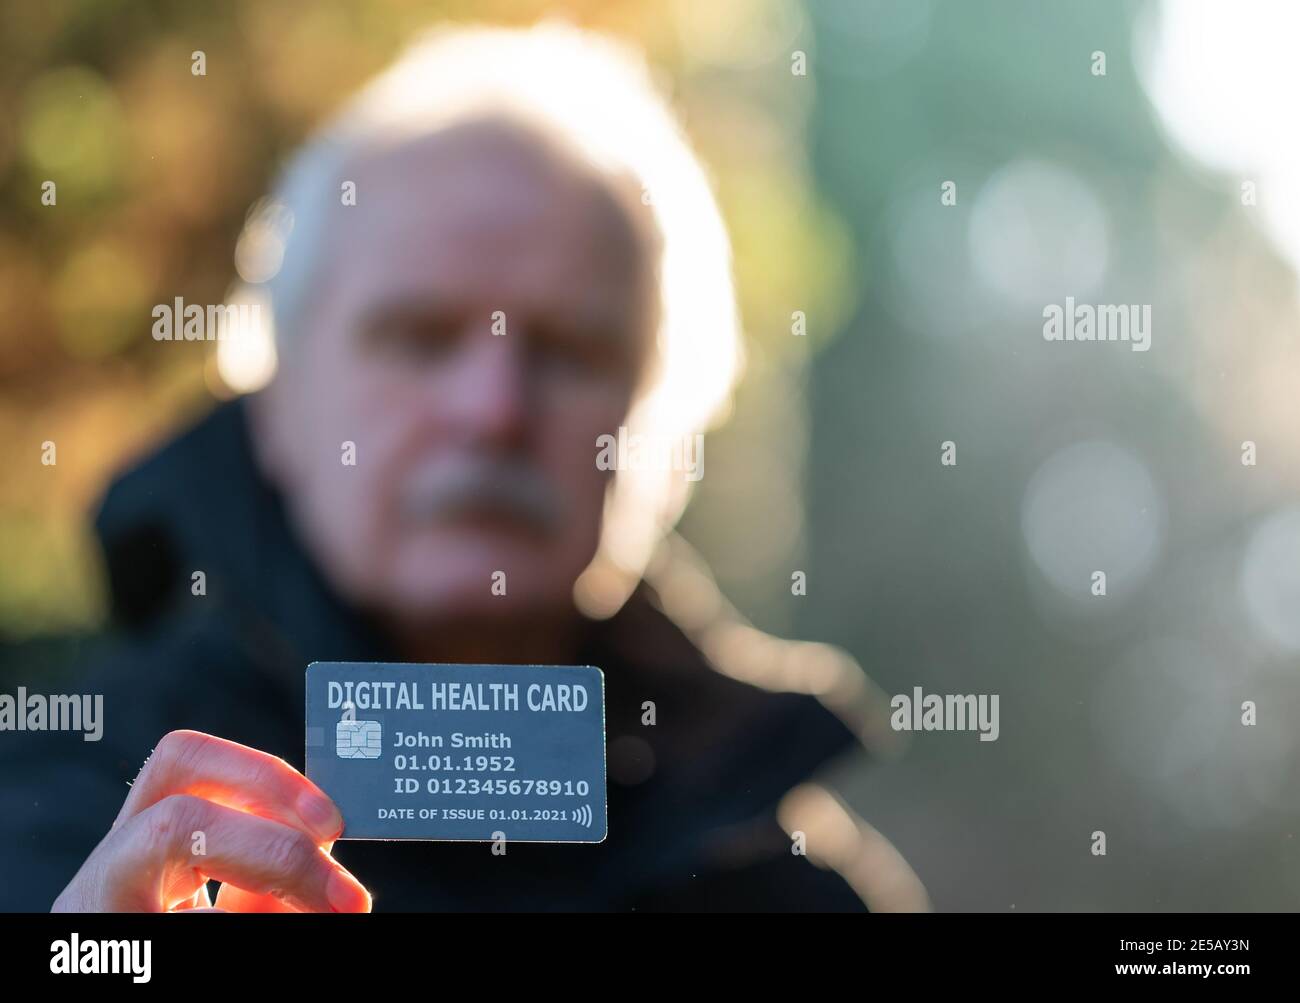 Personne âgée montrant une carte de santé numérique. Banque D'Images